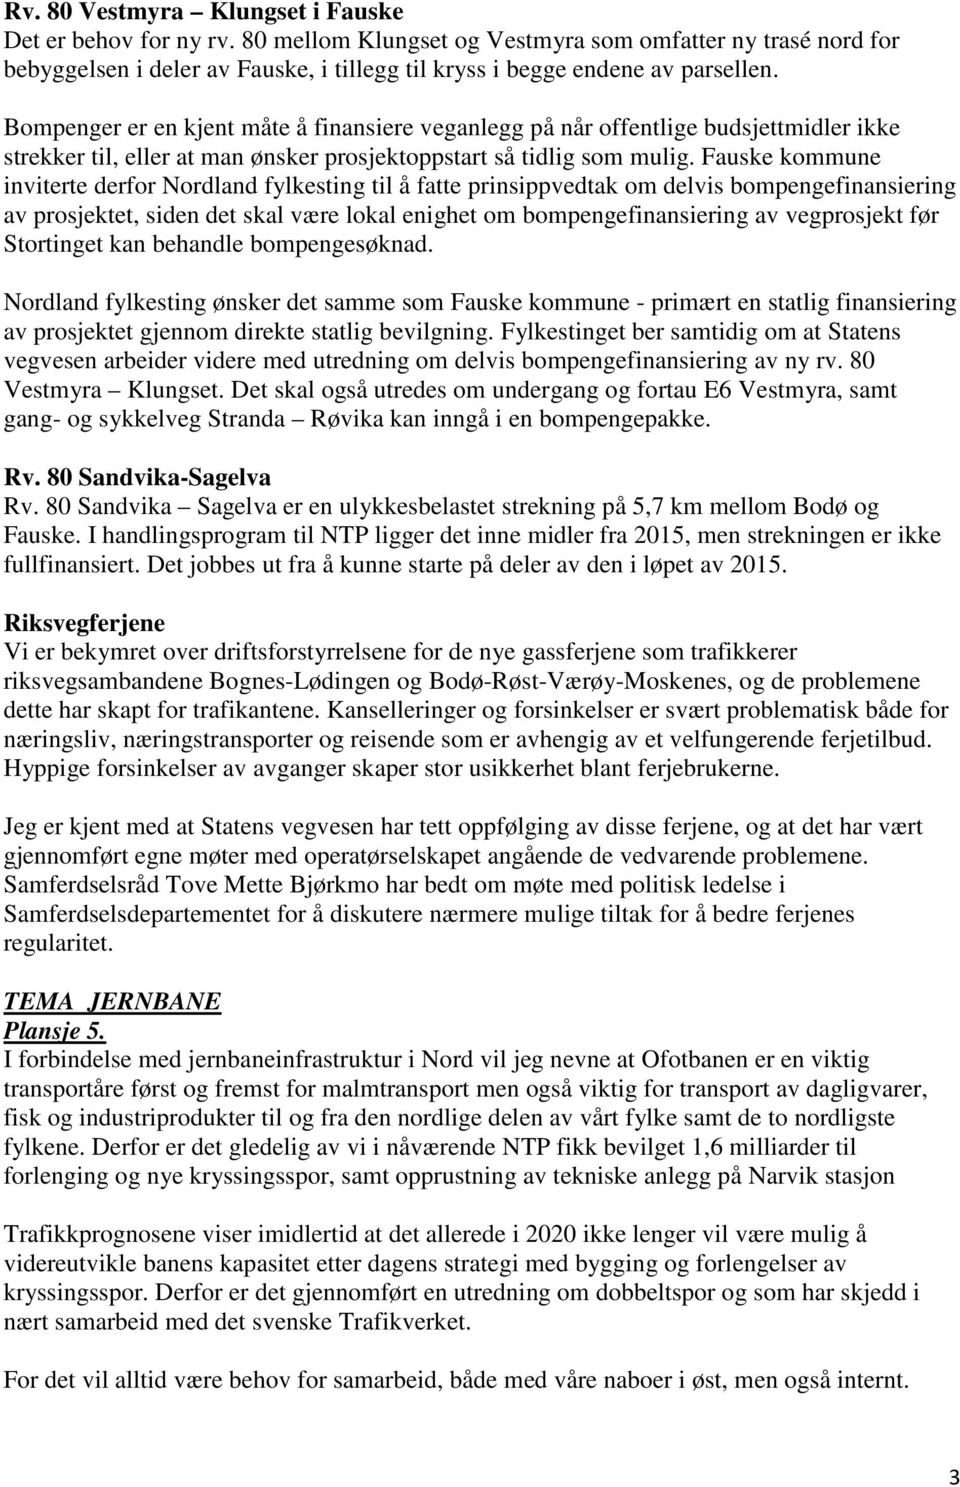 Fauske kommune inviterte derfor Nordland fylkesting til å fatte prinsippvedtak om delvis bompengefinansiering av prosjektet, siden det skal være lokal enighet om bompengefinansiering av vegprosjekt